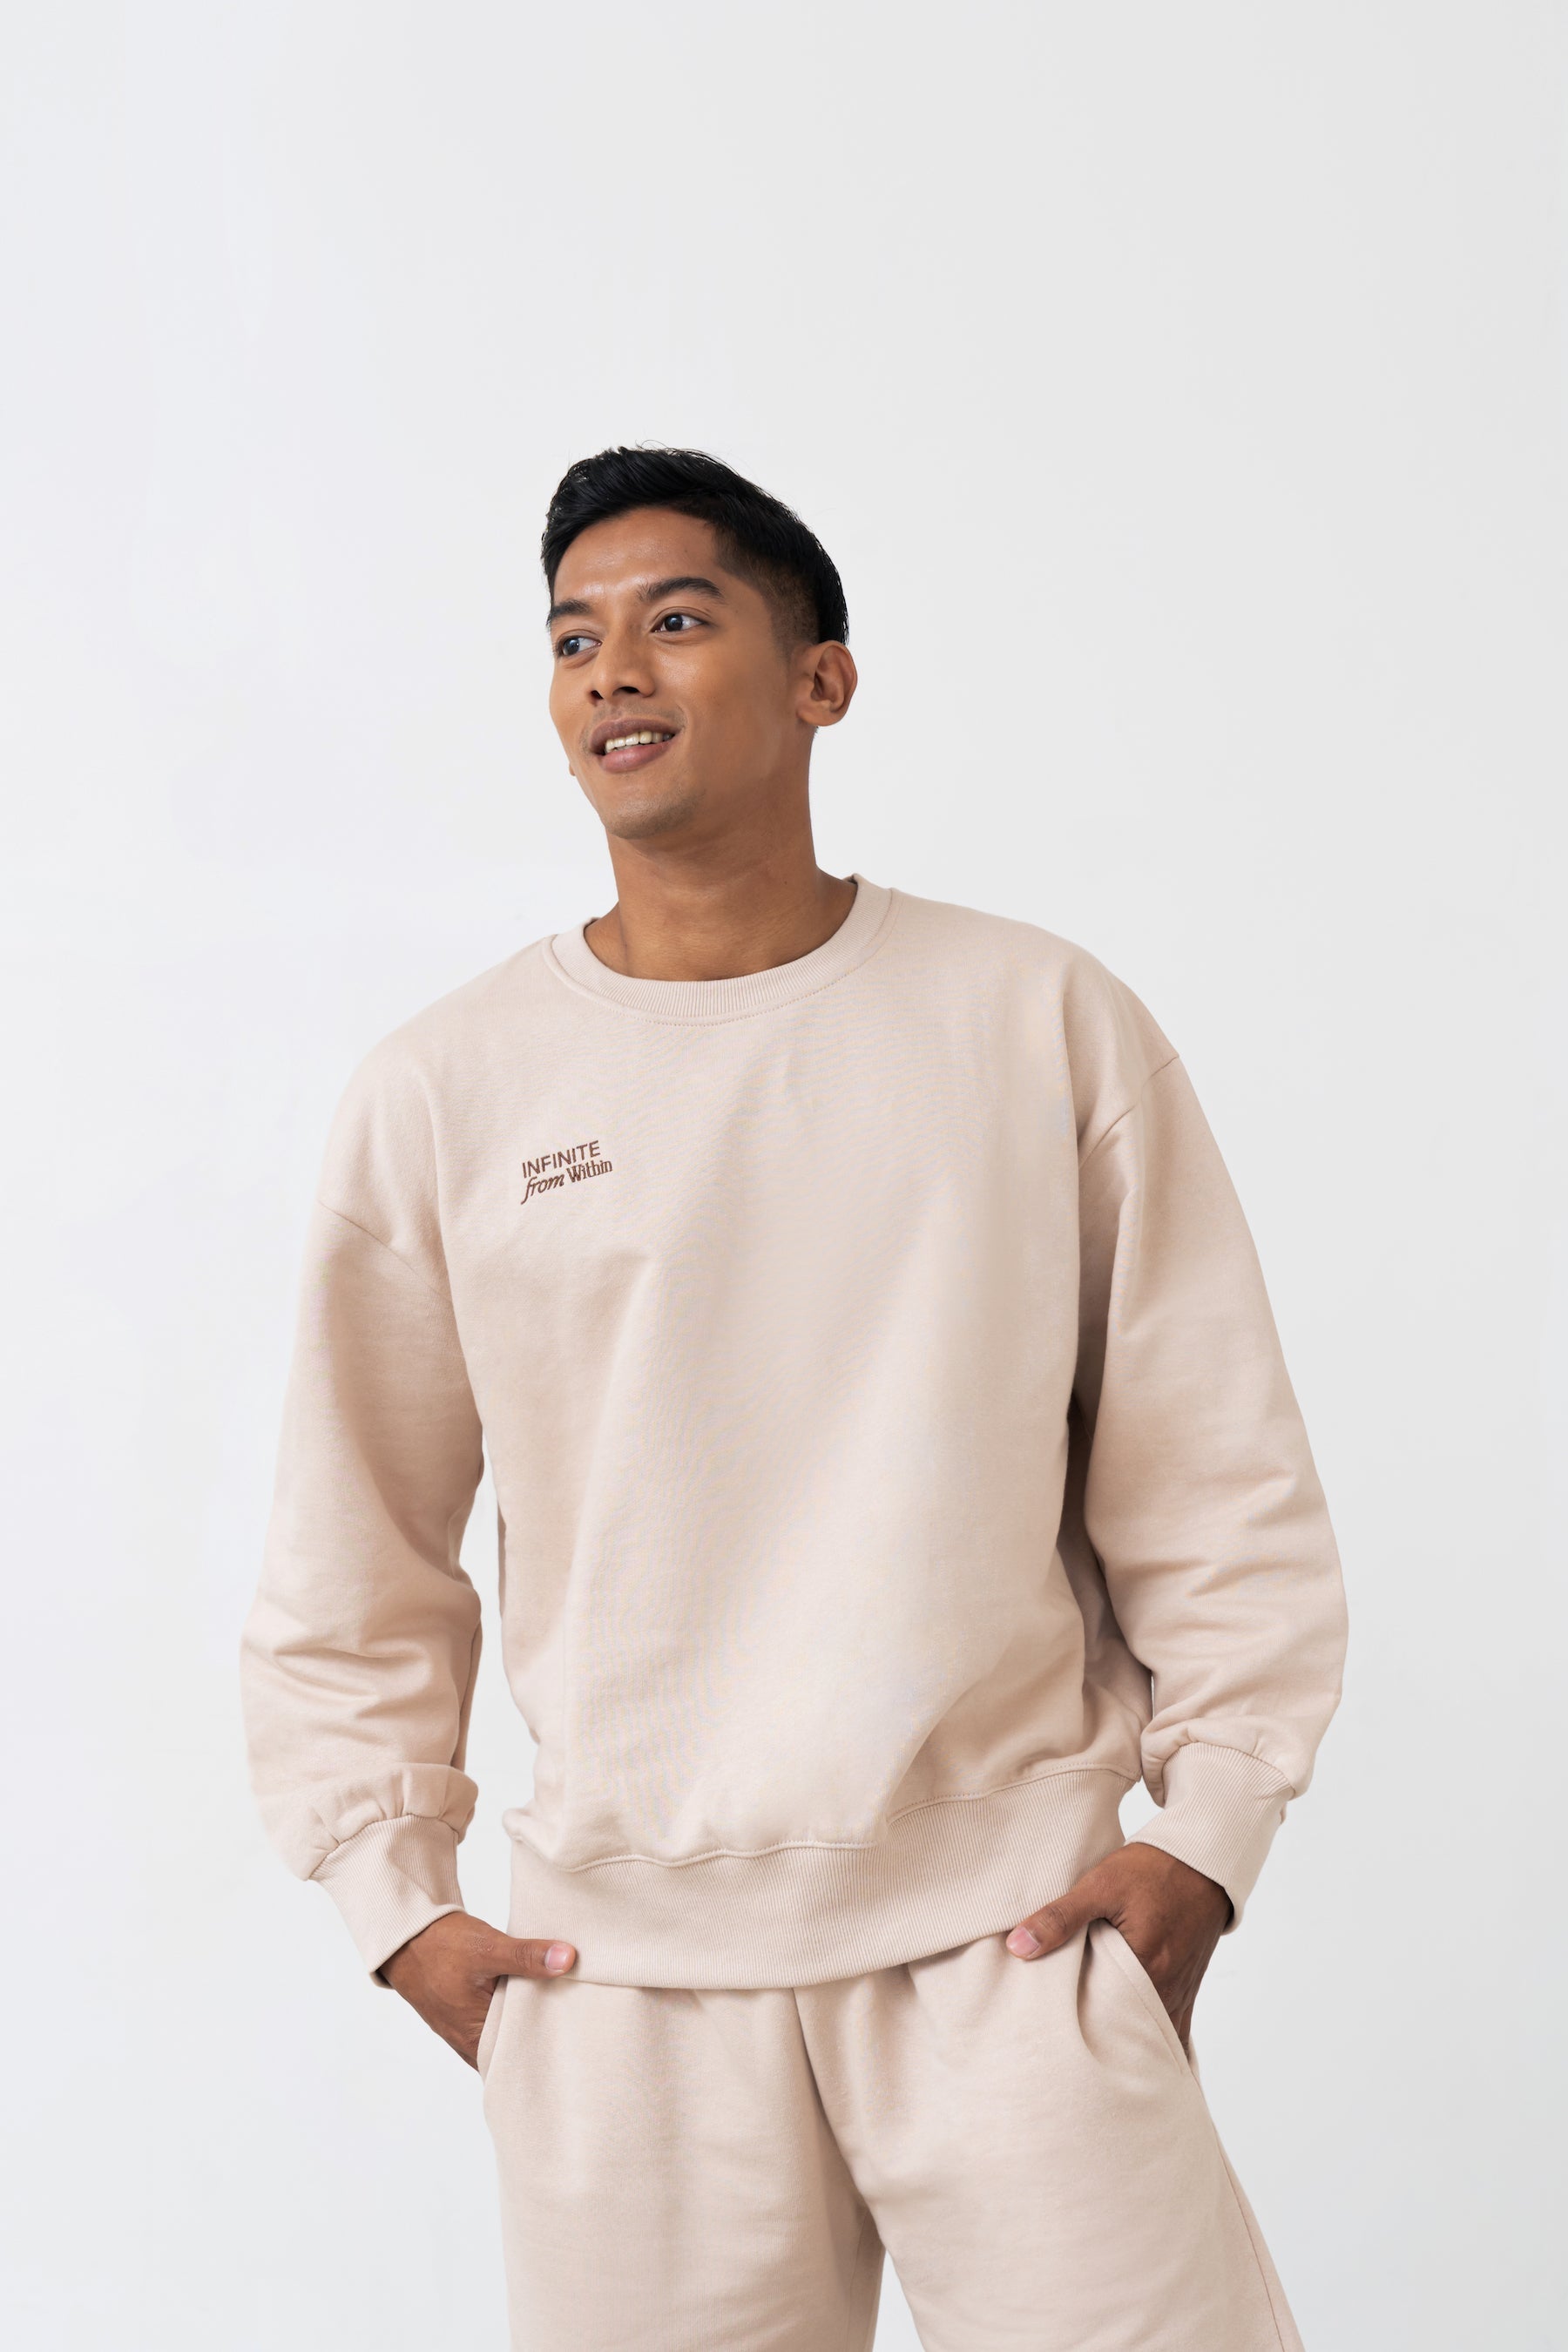 Infinite Crew Neck Sweater in Latte (Unisex)